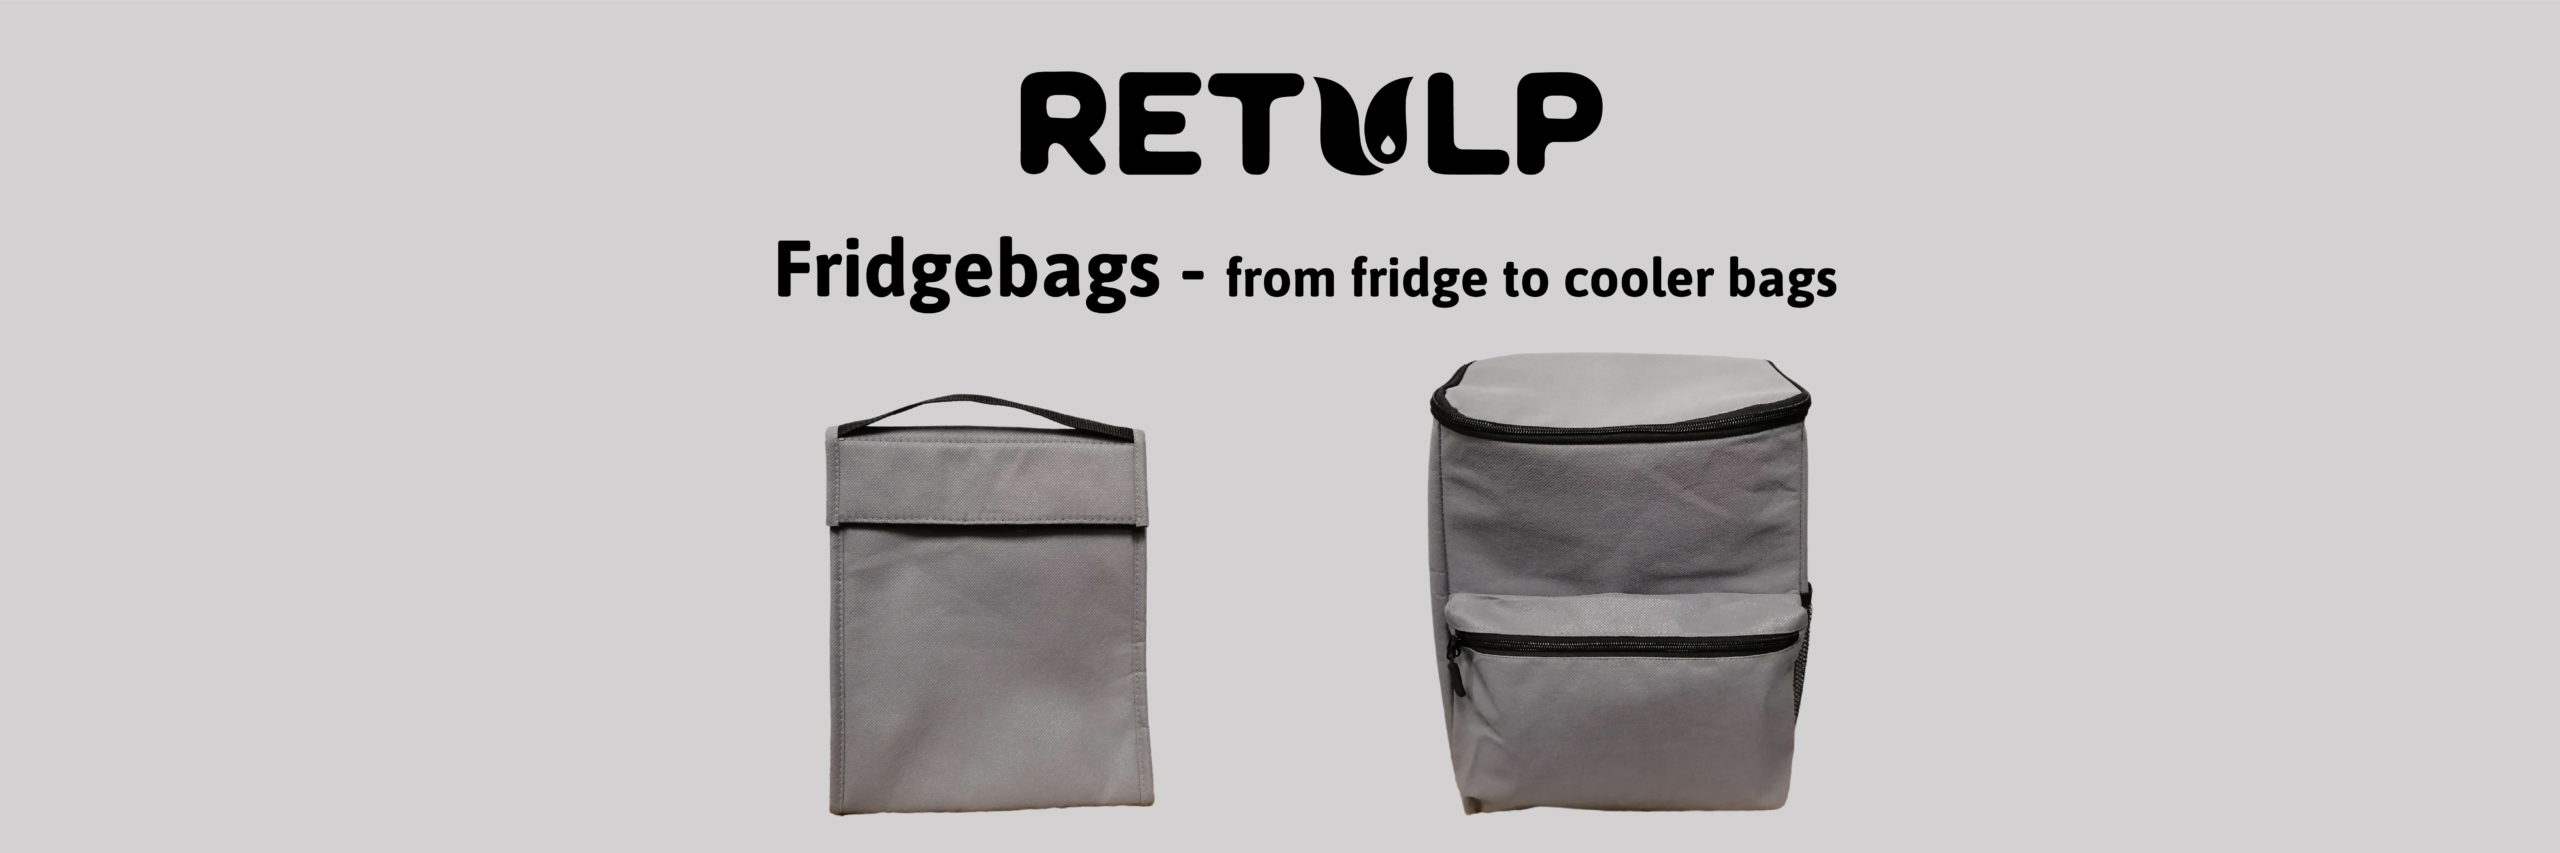 Fridge cooler bags - Retulp